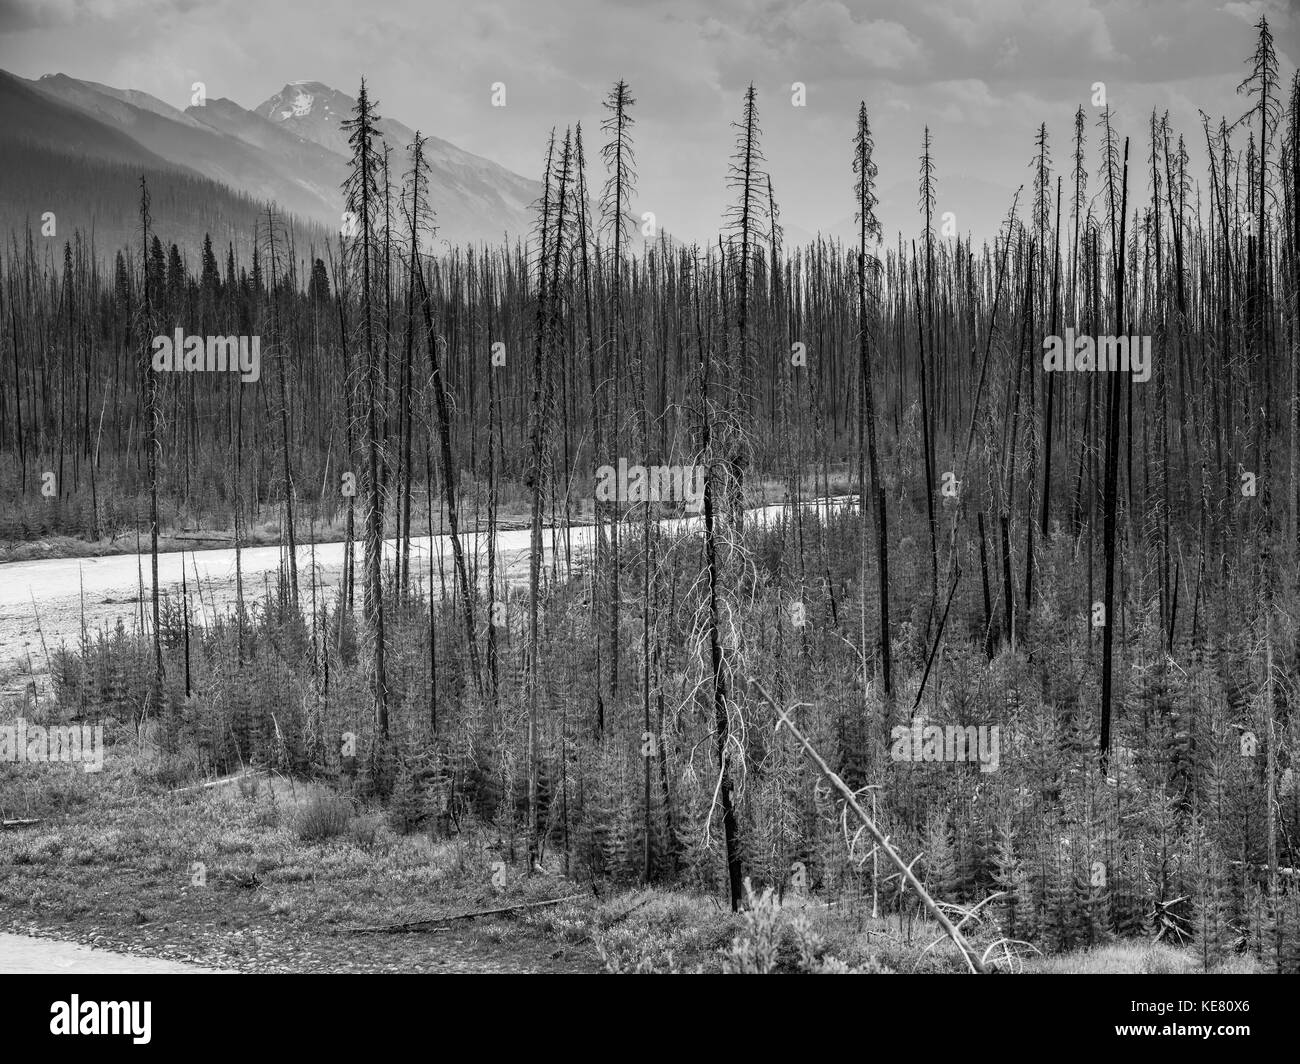 Imagen en blanco y negro de deshojado, árboles muertos y nuevo crecimiento de un bosque en las montañas emergentes; Edgewater, British Columbia, Canadá Foto de stock